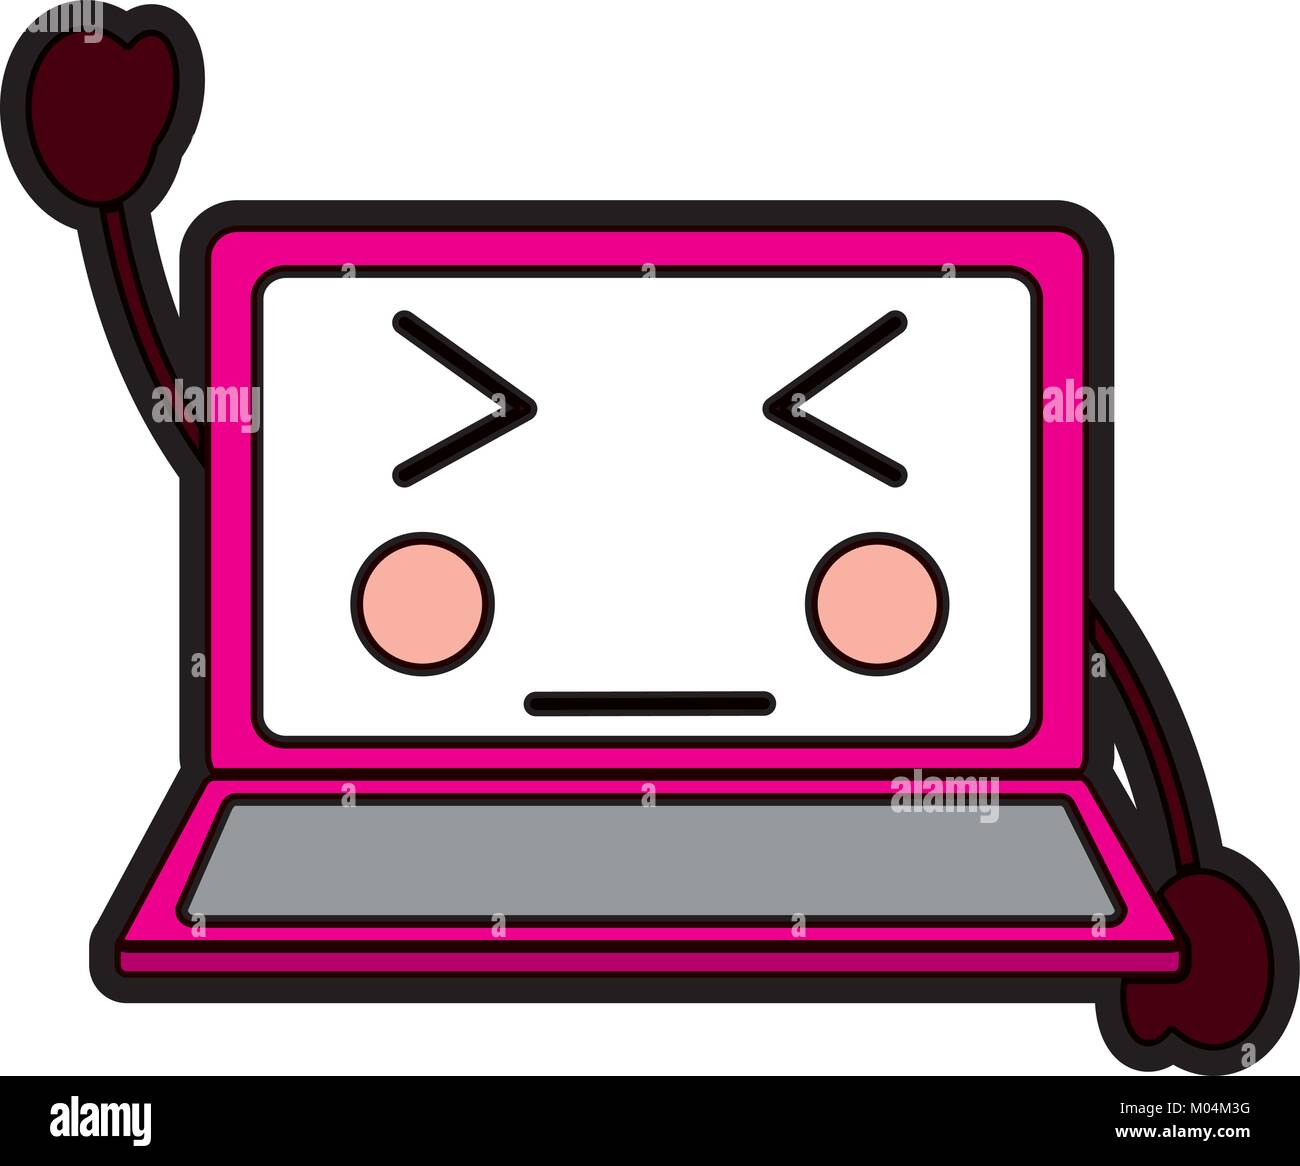 angry laptop kawaii icon image Stock Vector Image & Art - Alamy